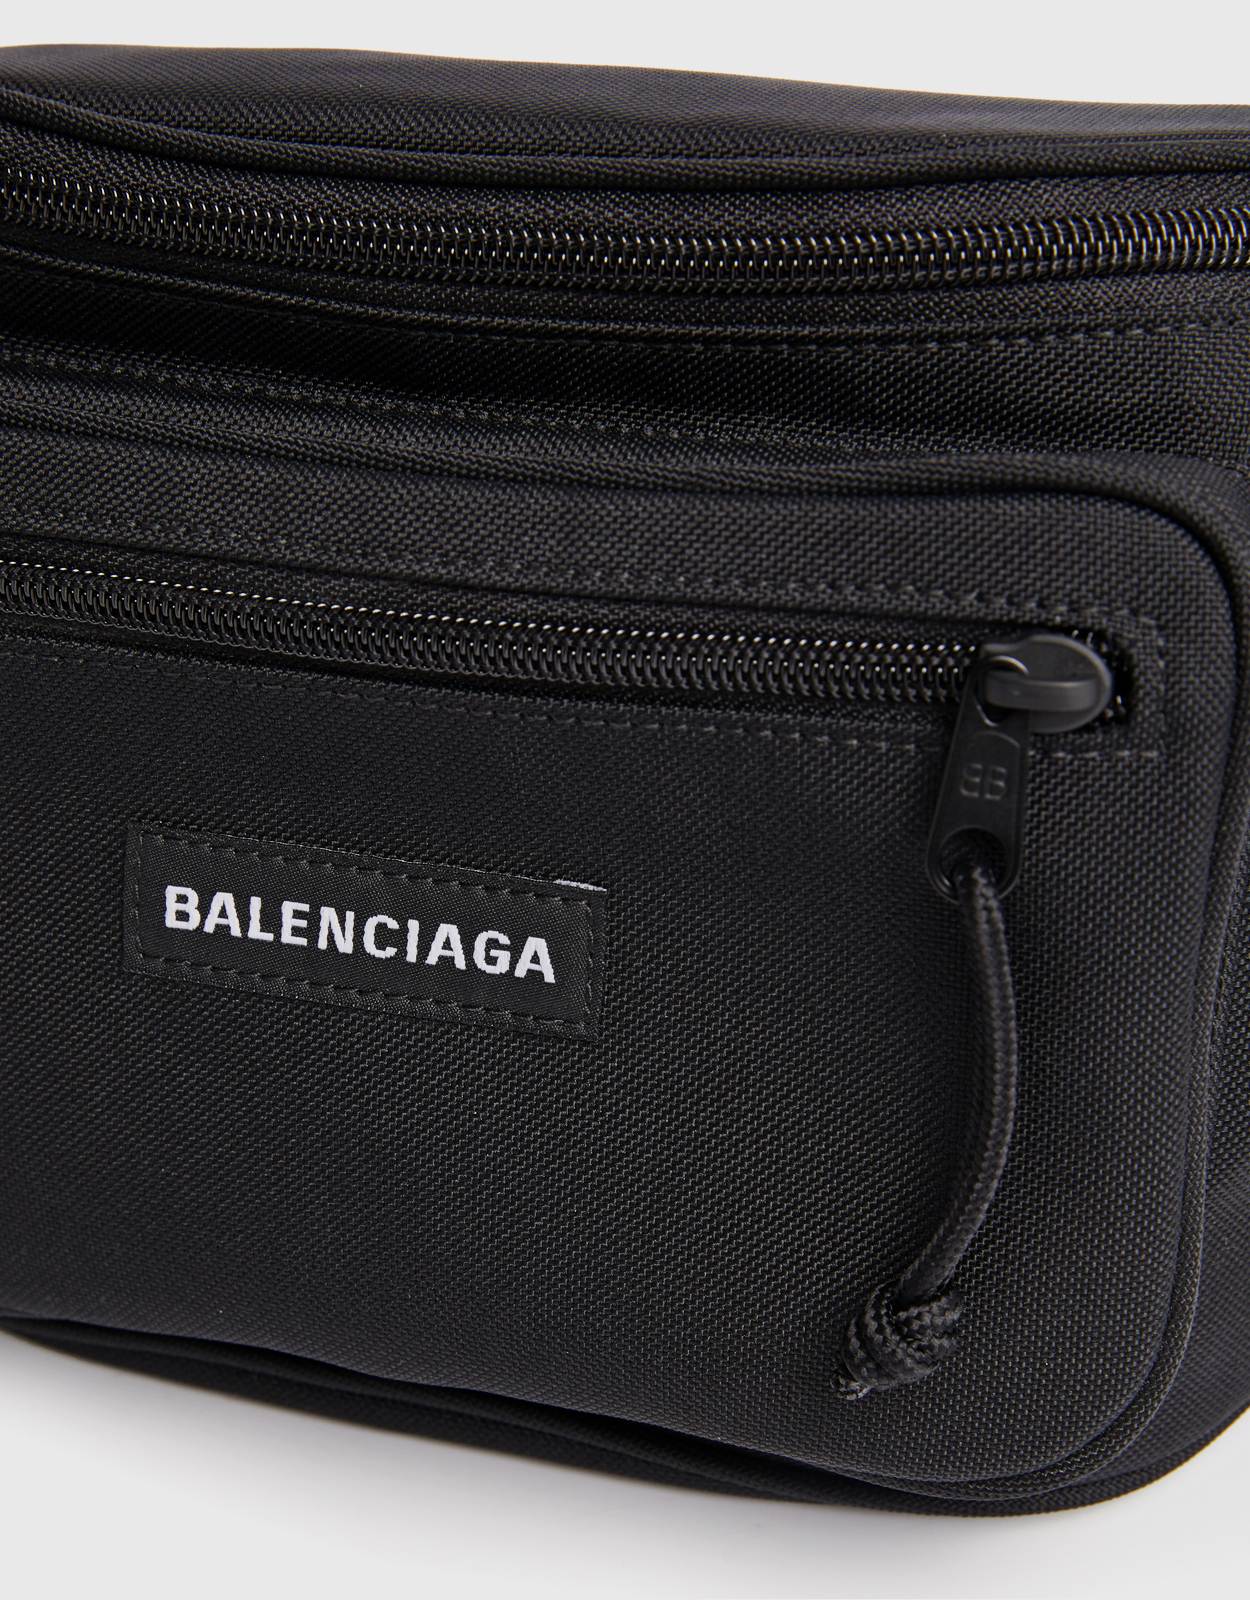 Men's Beltbags | Balenciaga US